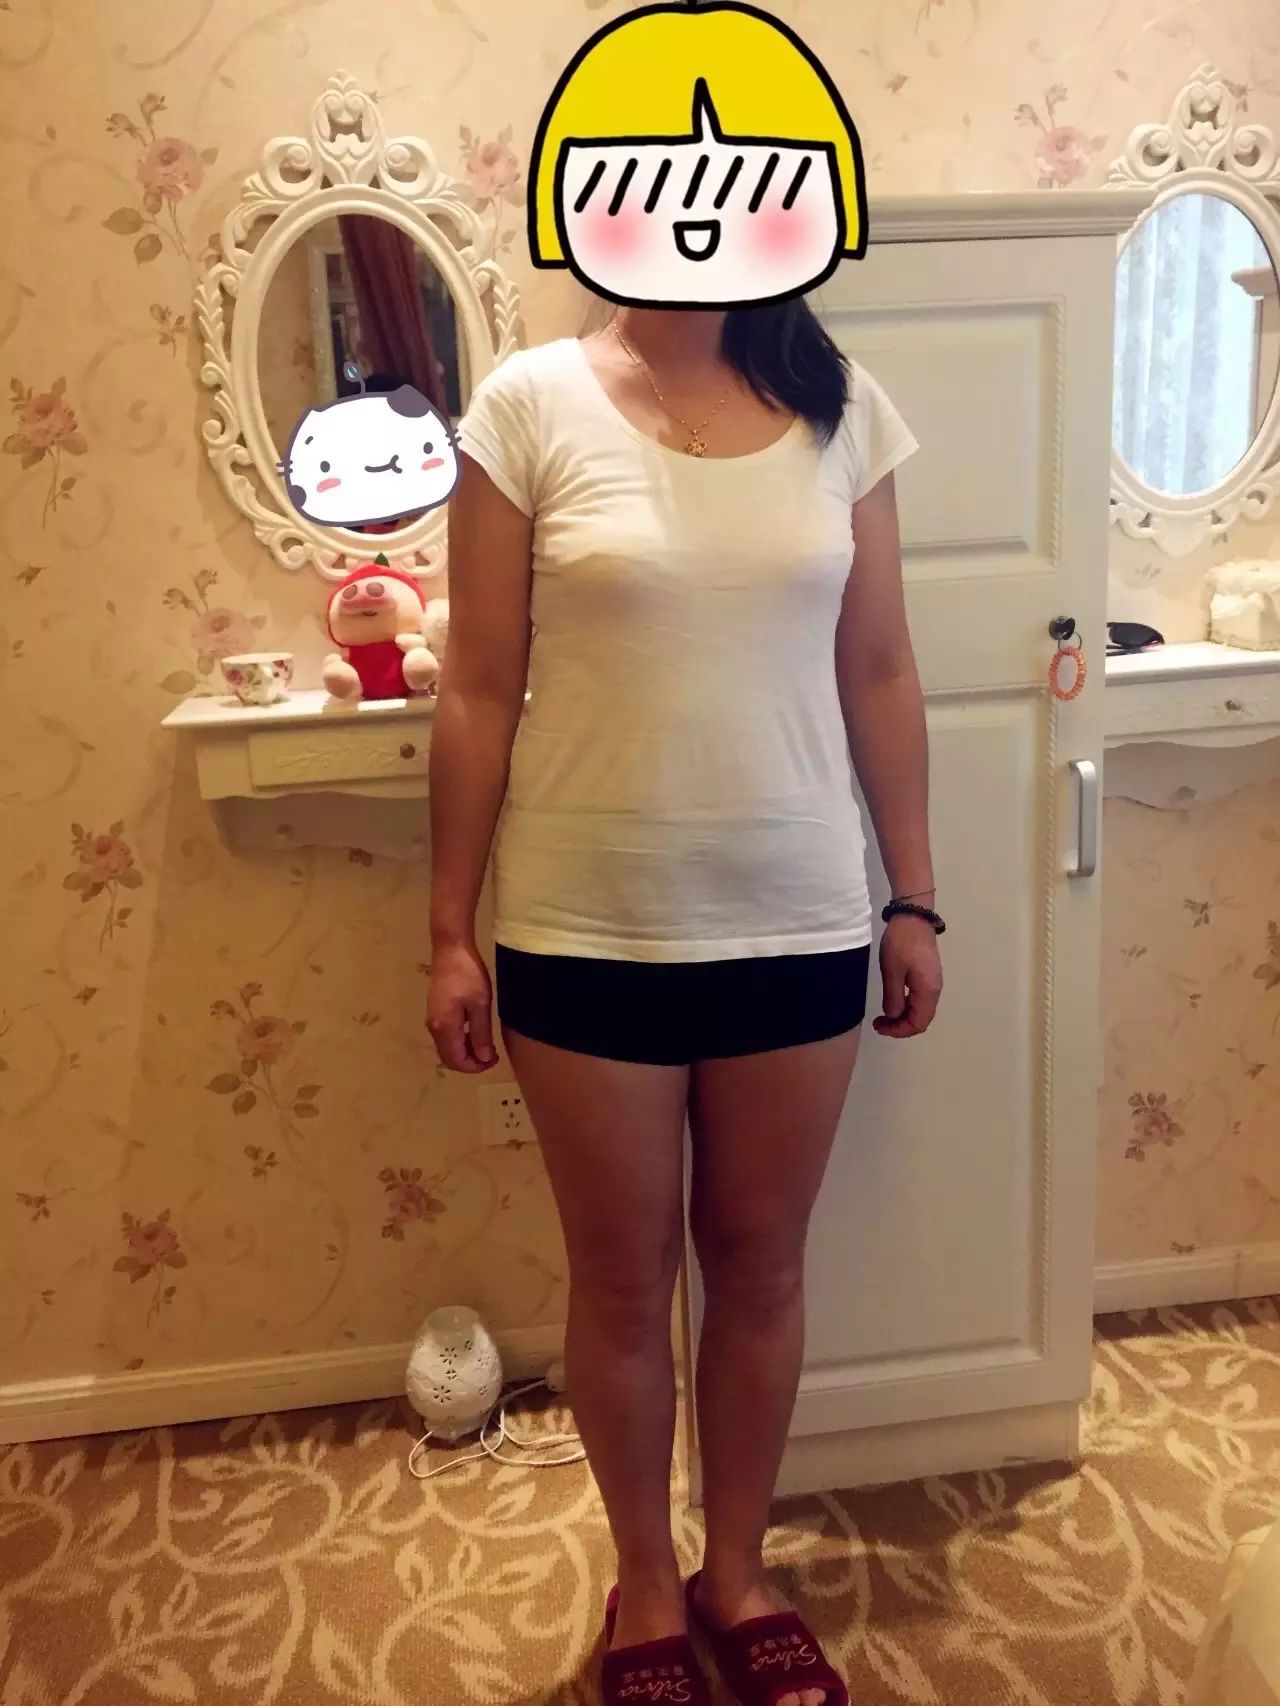 冬季"瘦瘦瘦"成难题,125斤的杭州胖妈竟励志逆袭?